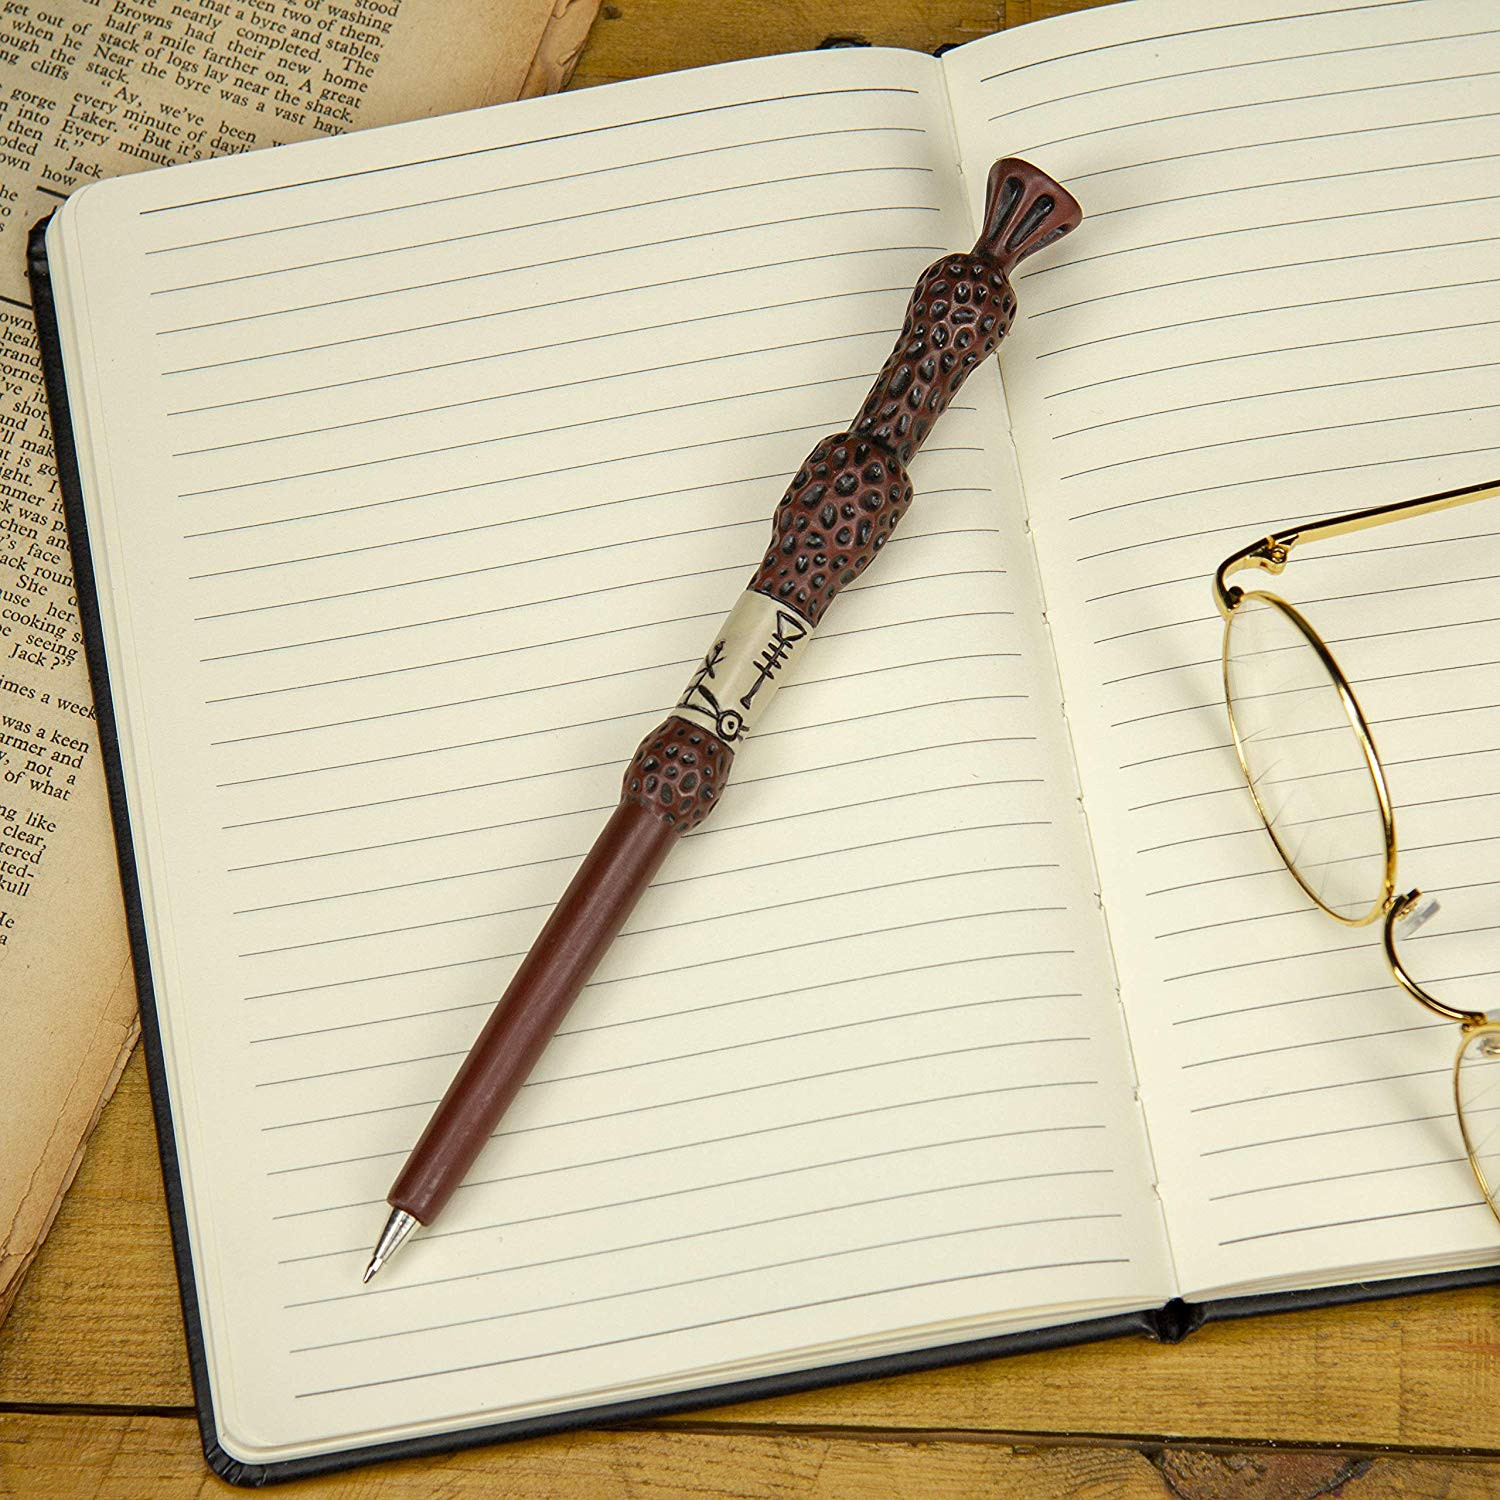 Harry Potter - Satz von 3D Kugelschreibern - Ungewöhnliche Stifte - Schule  und Arbeit - Zuhause und in der Arbeit